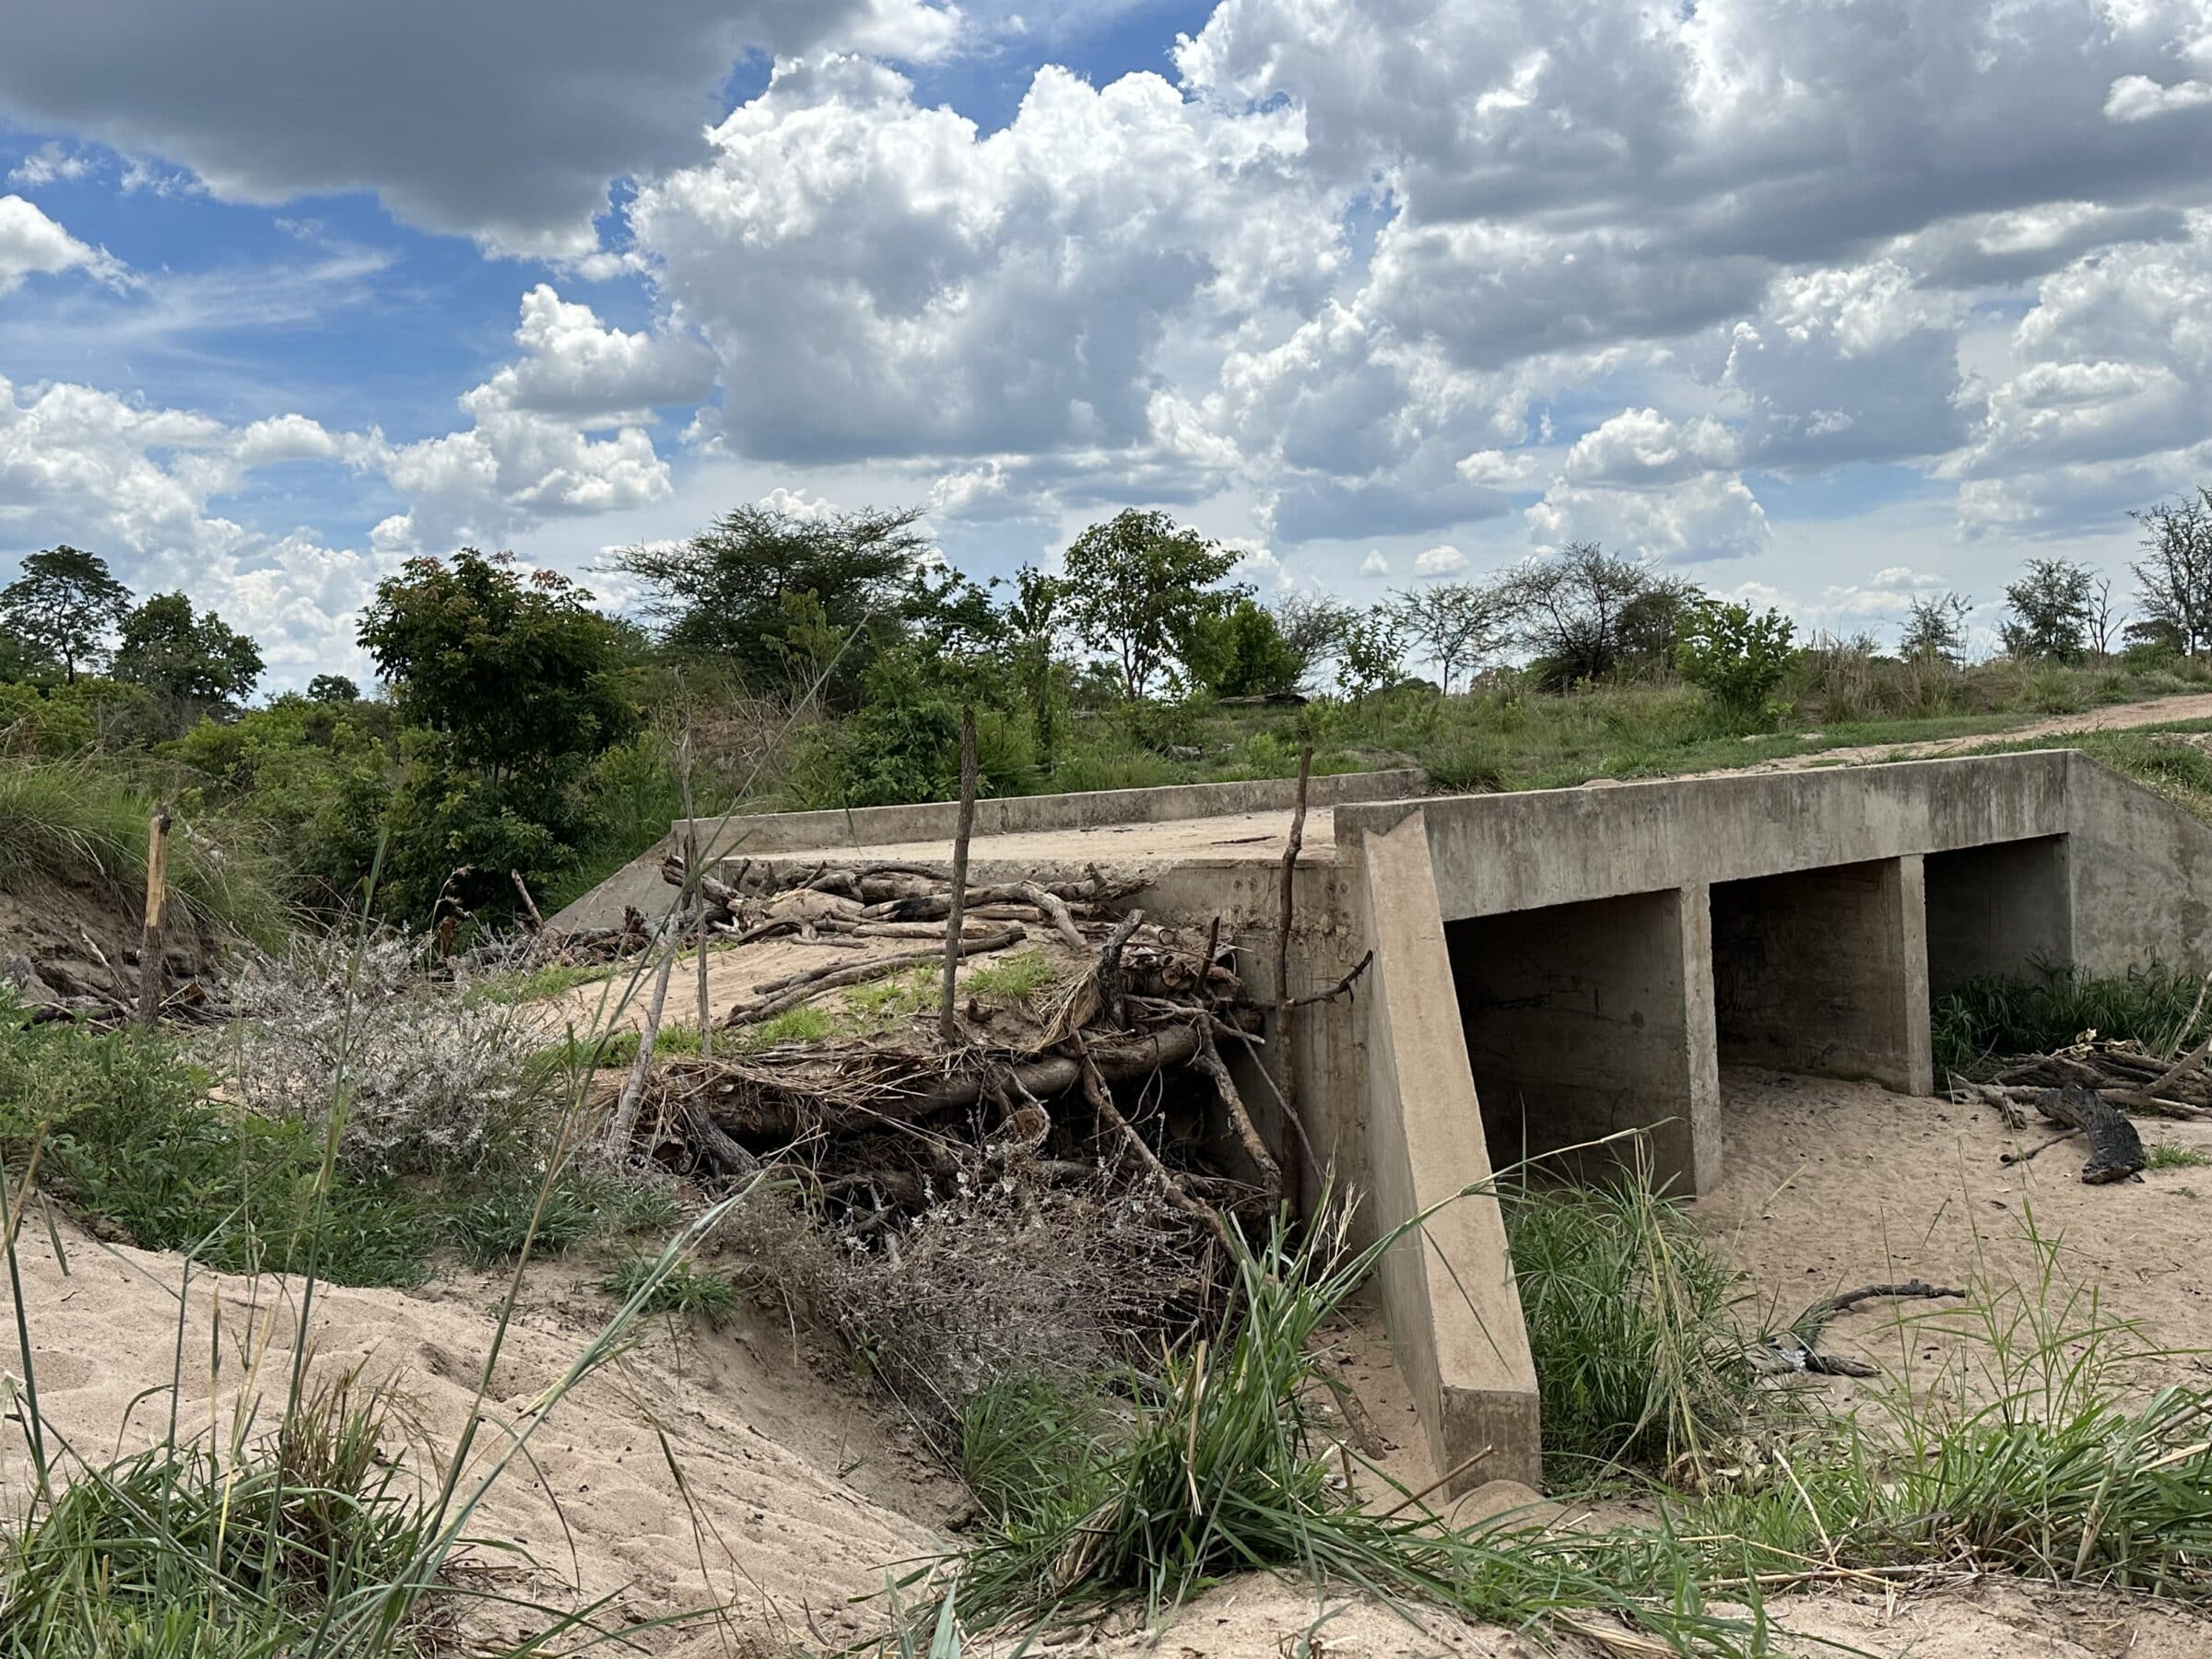 Ubrukelig bro | Overlanding i Zambia